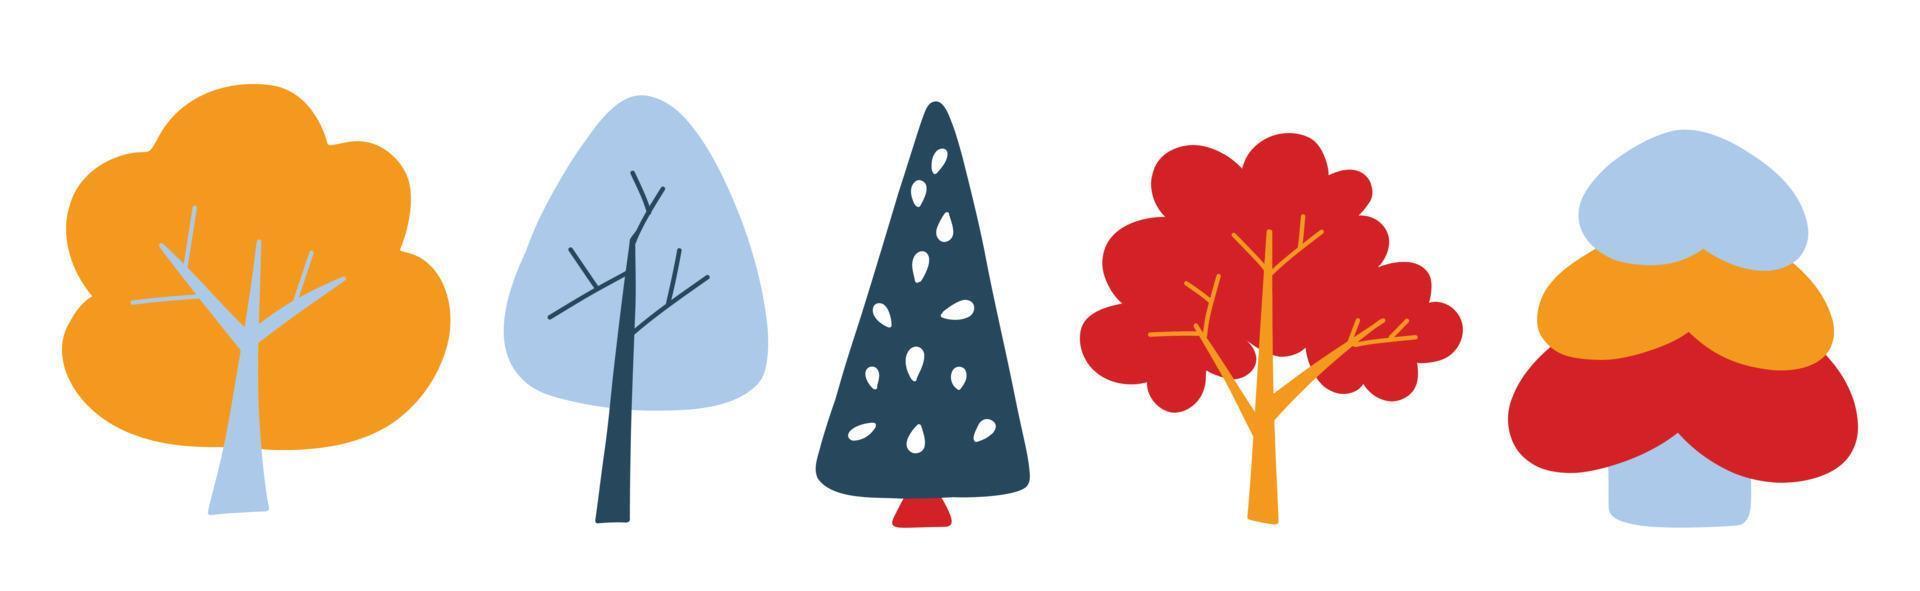 Vektorset mit niedlichen farbigen Bäumen im Doodle-Stil, bunten Cartoon-Bäumen. süße Illustrationen für Postkarten, Poster, Stoffe, Design vektor